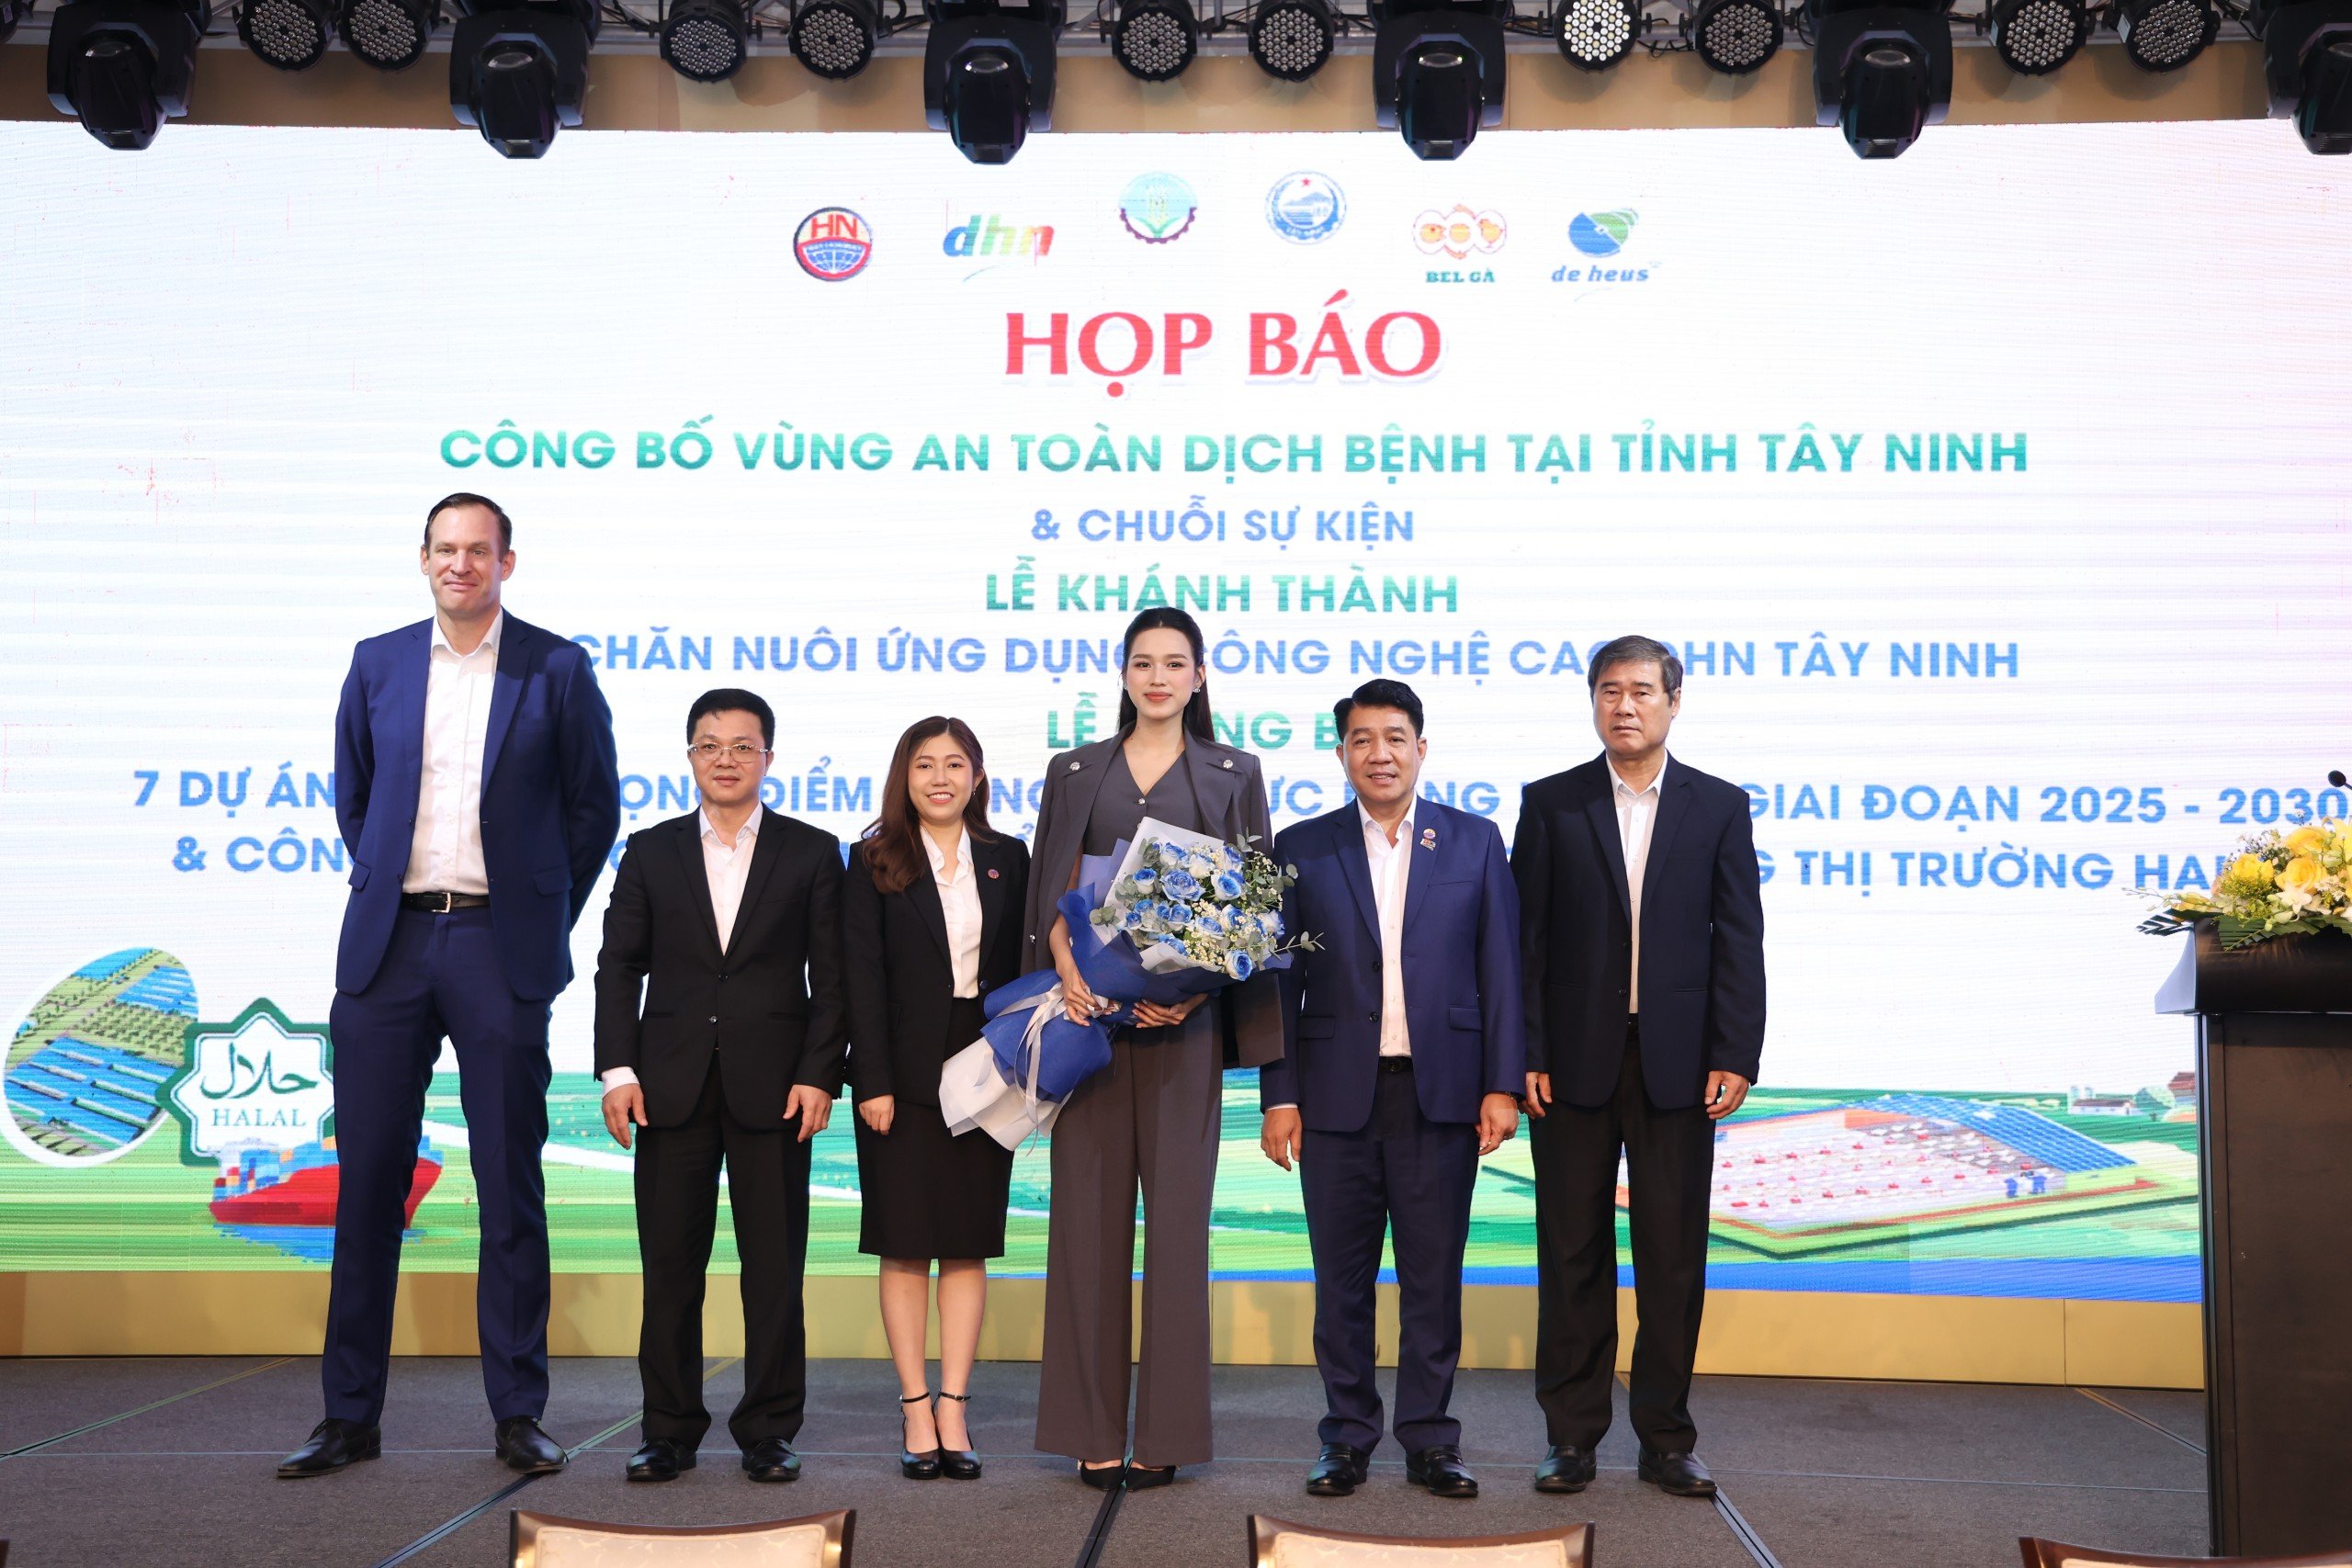 Tây Ninh chuẩn bị đón 1.000 khách dự chuỗi sự kiện lớn ngành nông nghiệp và công bố vùng an toàn dịch bệnh- Ảnh 8.